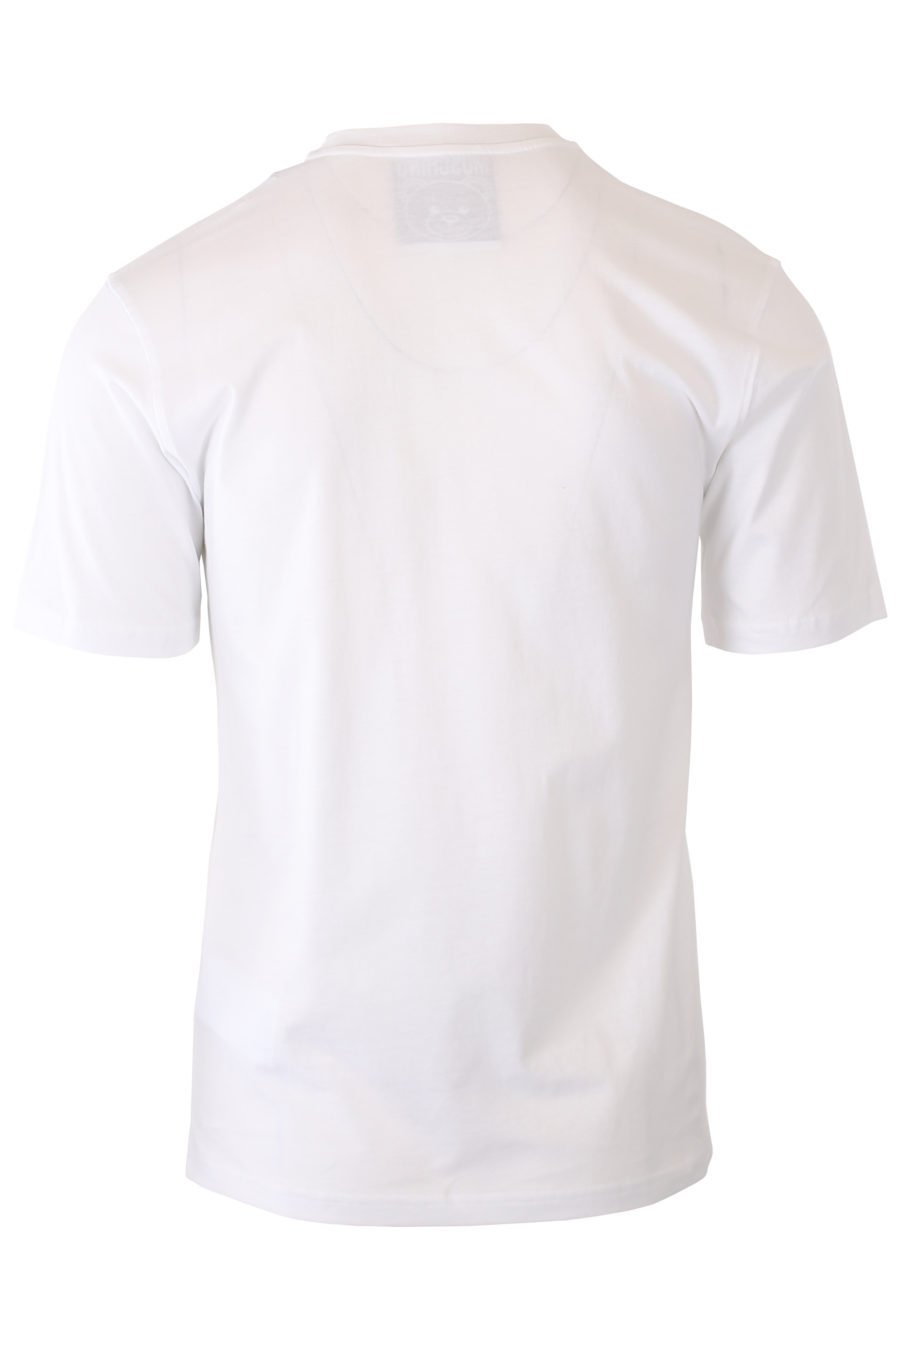 Camiseta blanca con logo oso robotico - IMG 9284